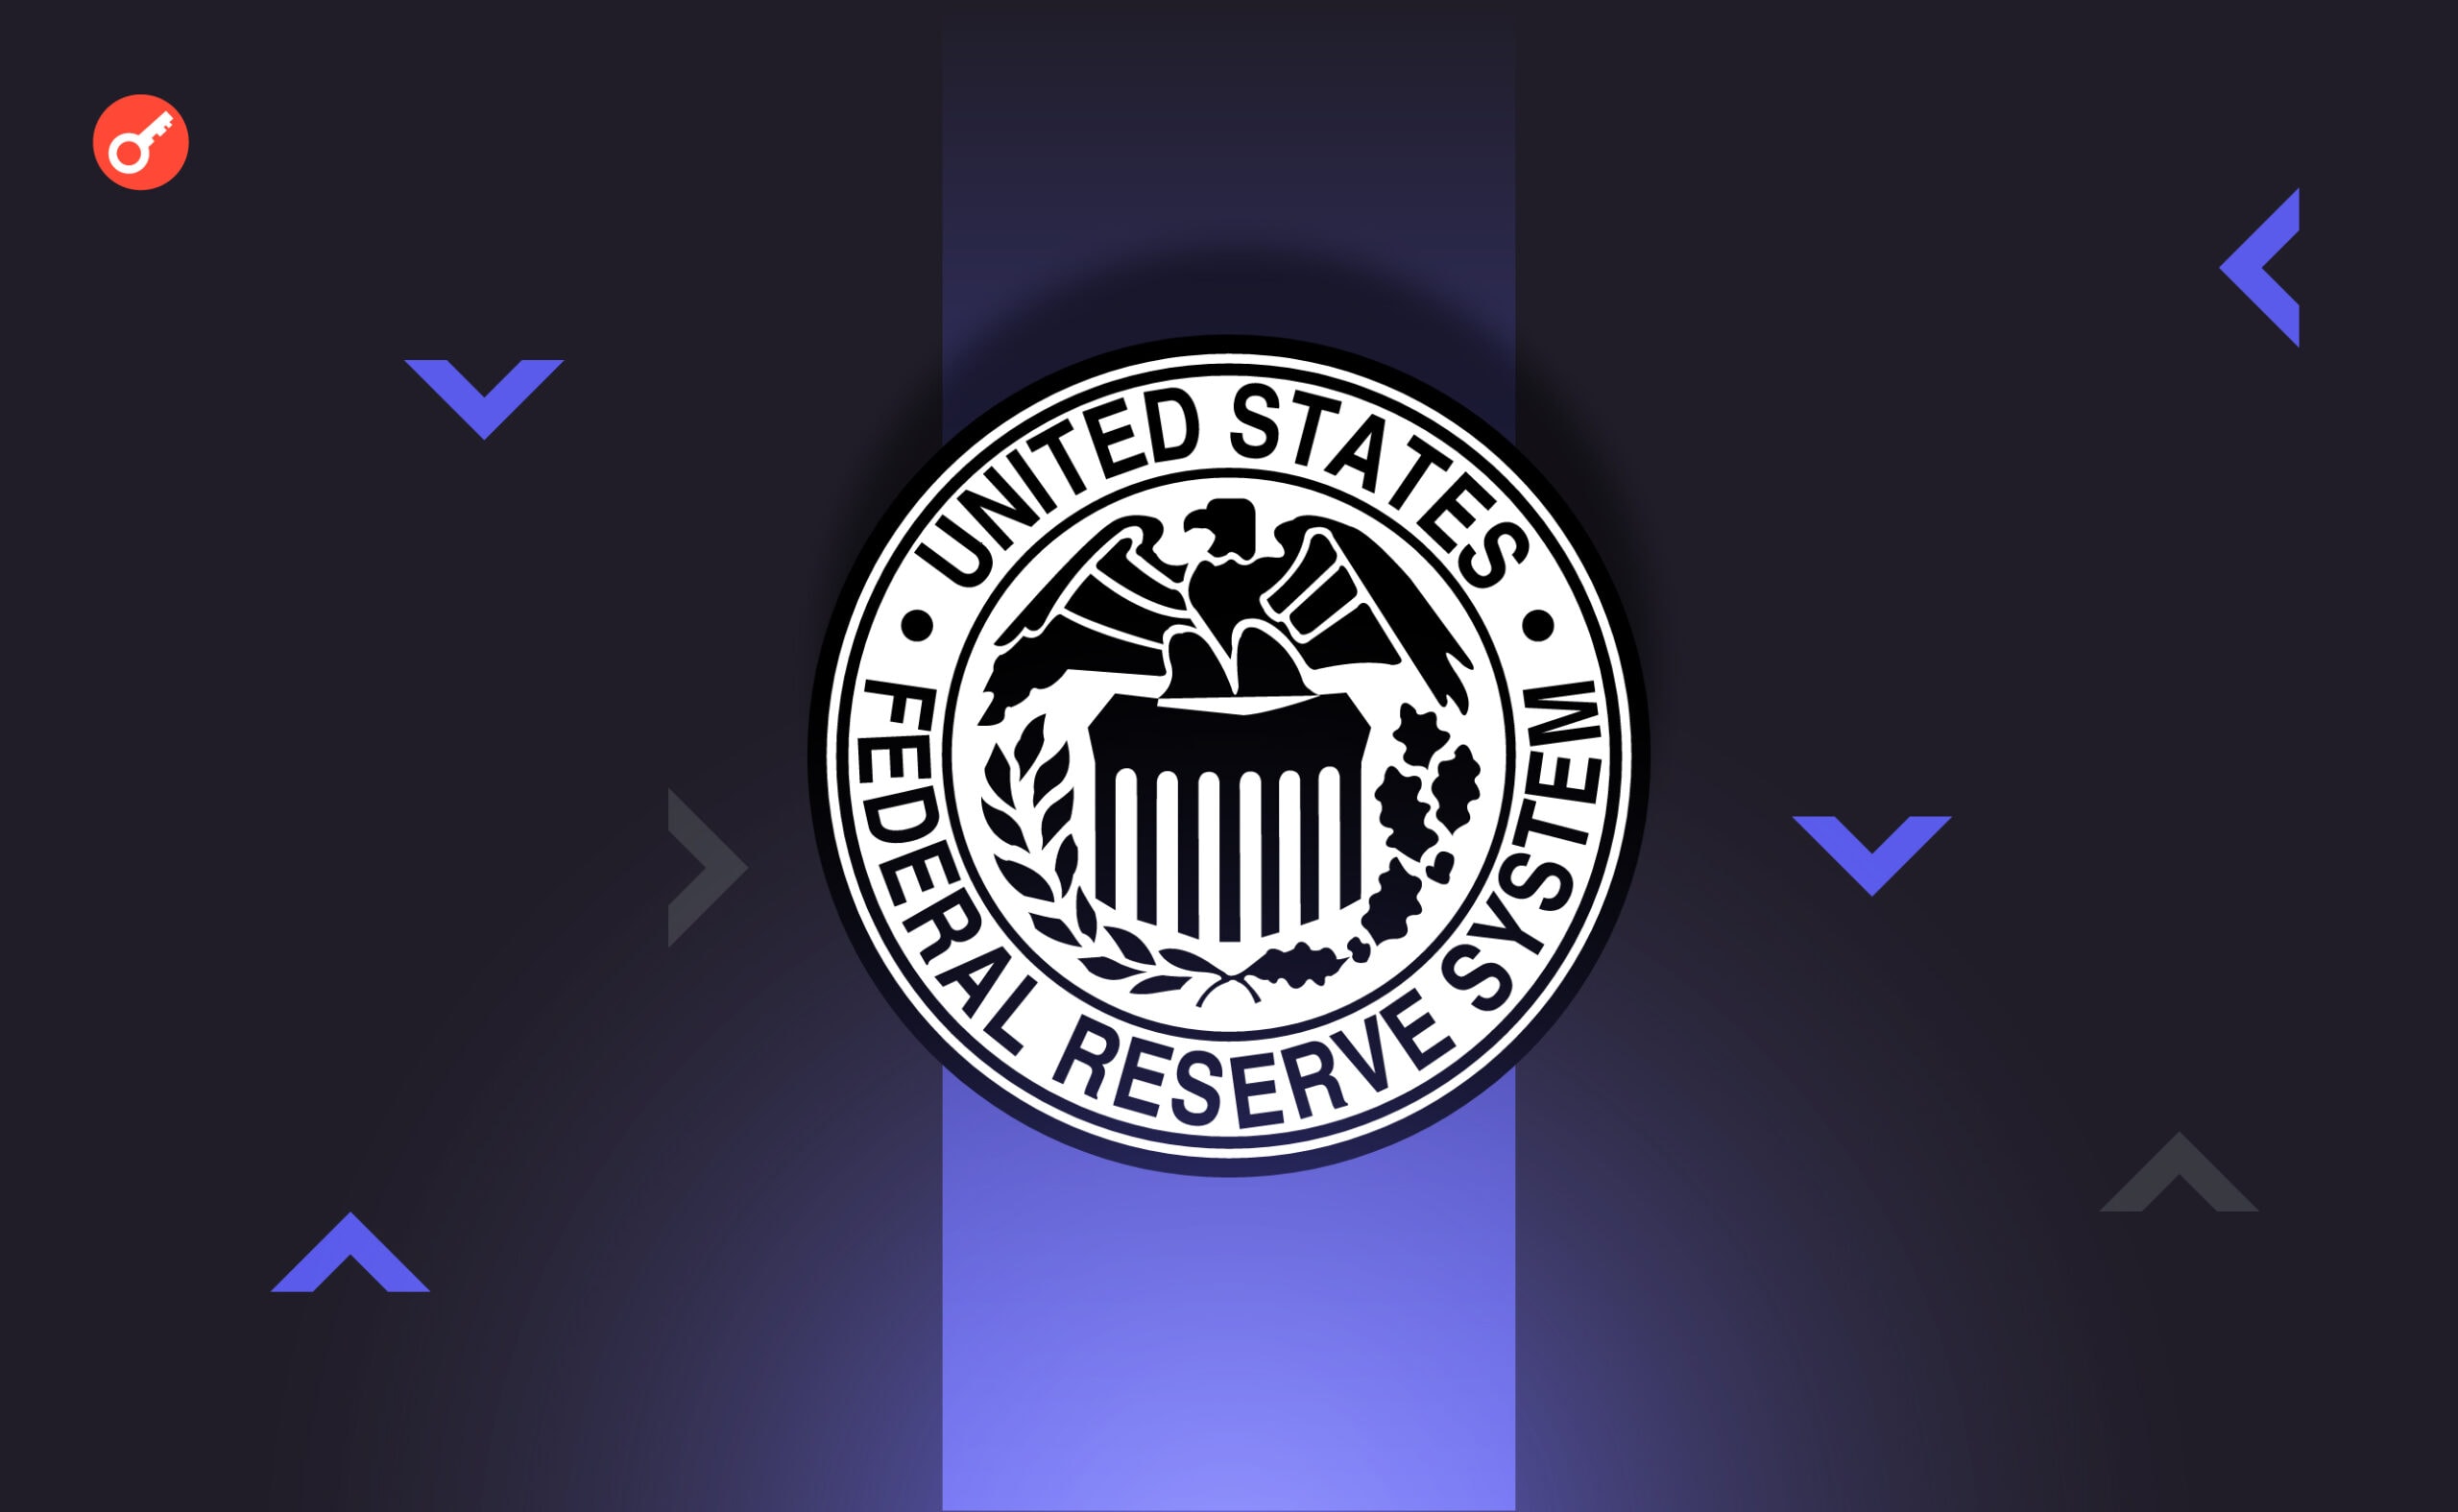 ФРС объявила решение по процентной ставке. Биткоин удержал позиции. Заглавный коллаж новости.